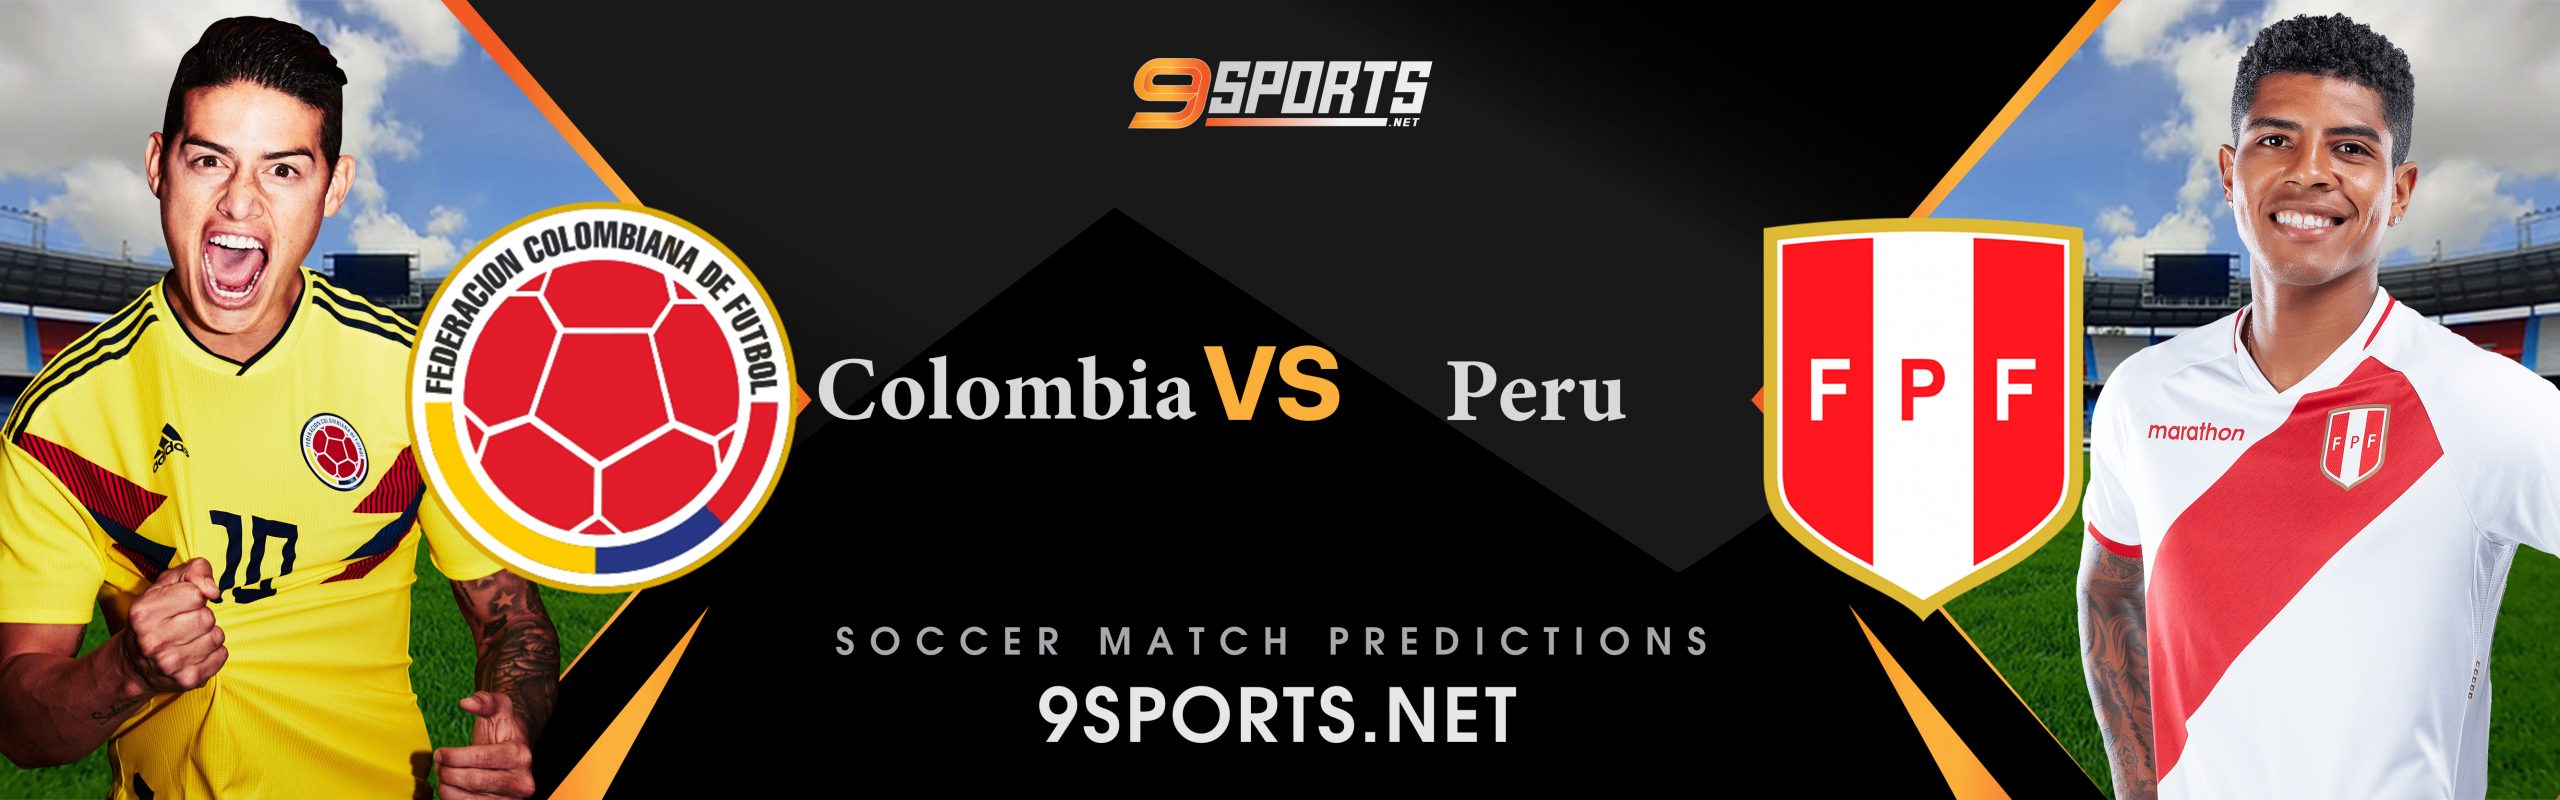 ทีเด็ดวิเคราะห์บอล บอลโลก โซนอเมริกาใต้ (World Cup South America Zone)  โคลัมเบีย VS เปรู